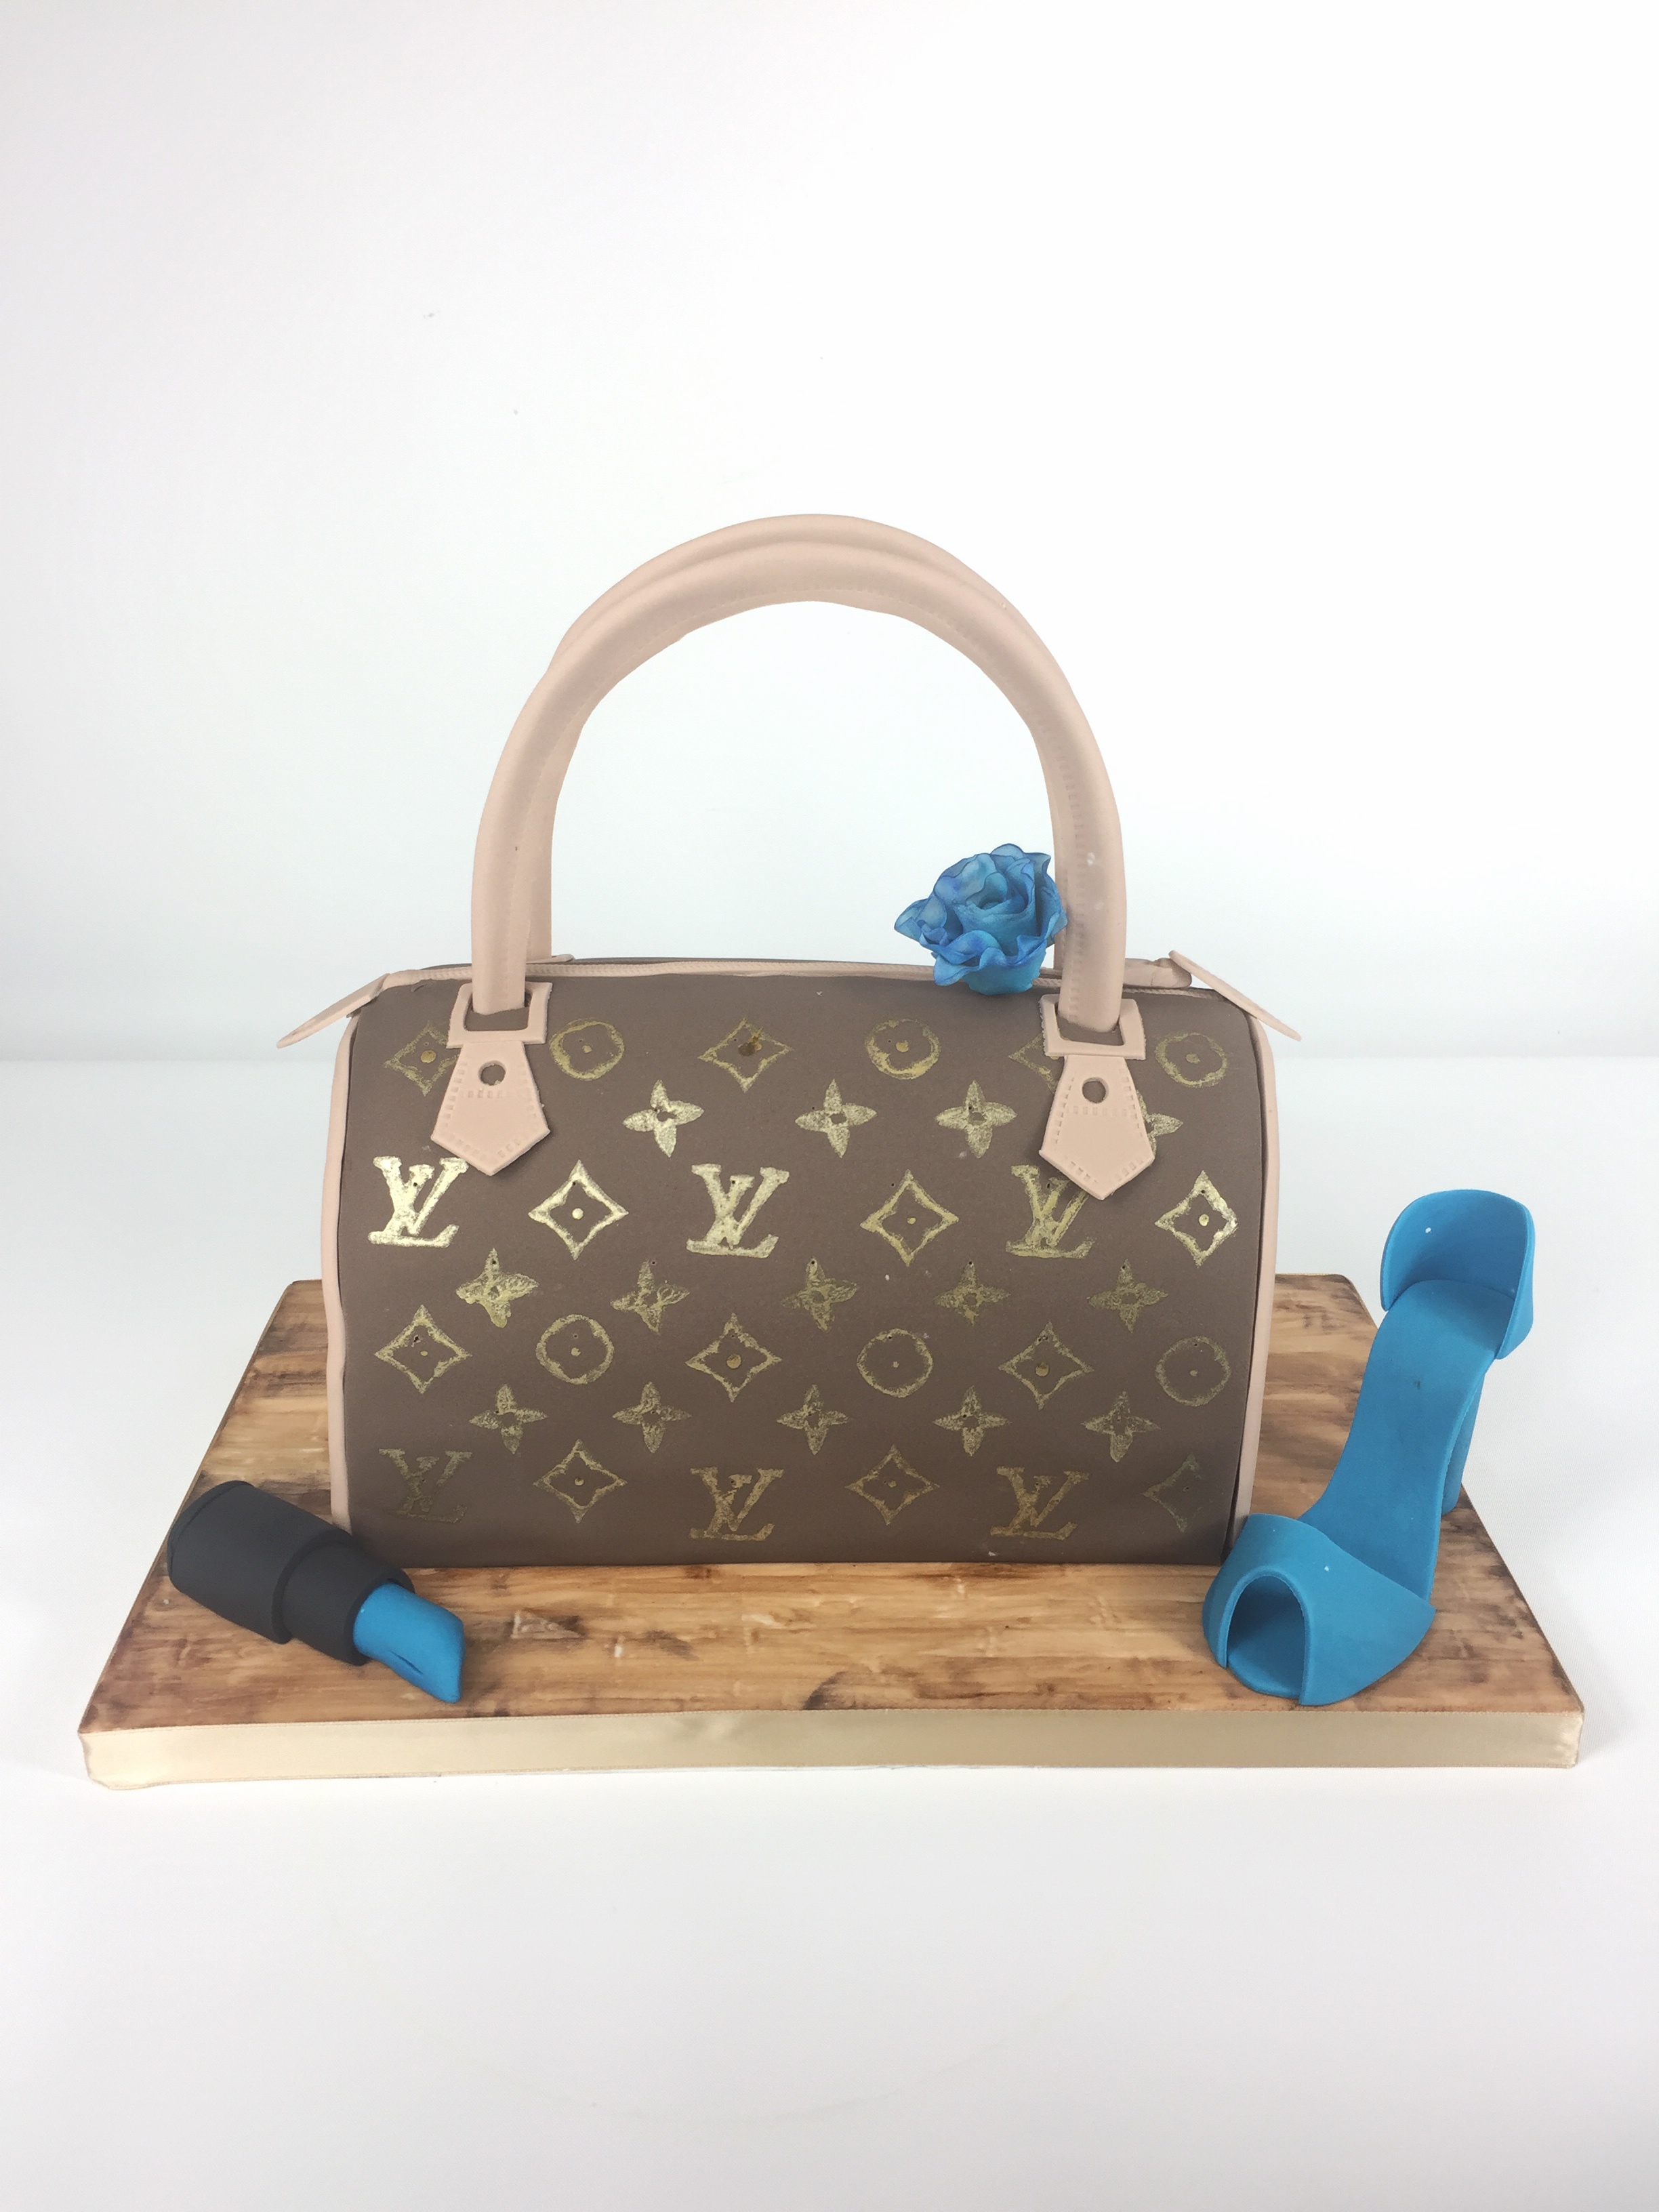 Louis Vuitton Handbag  Handbag cakes, Louis vuitton cake, Purse cake